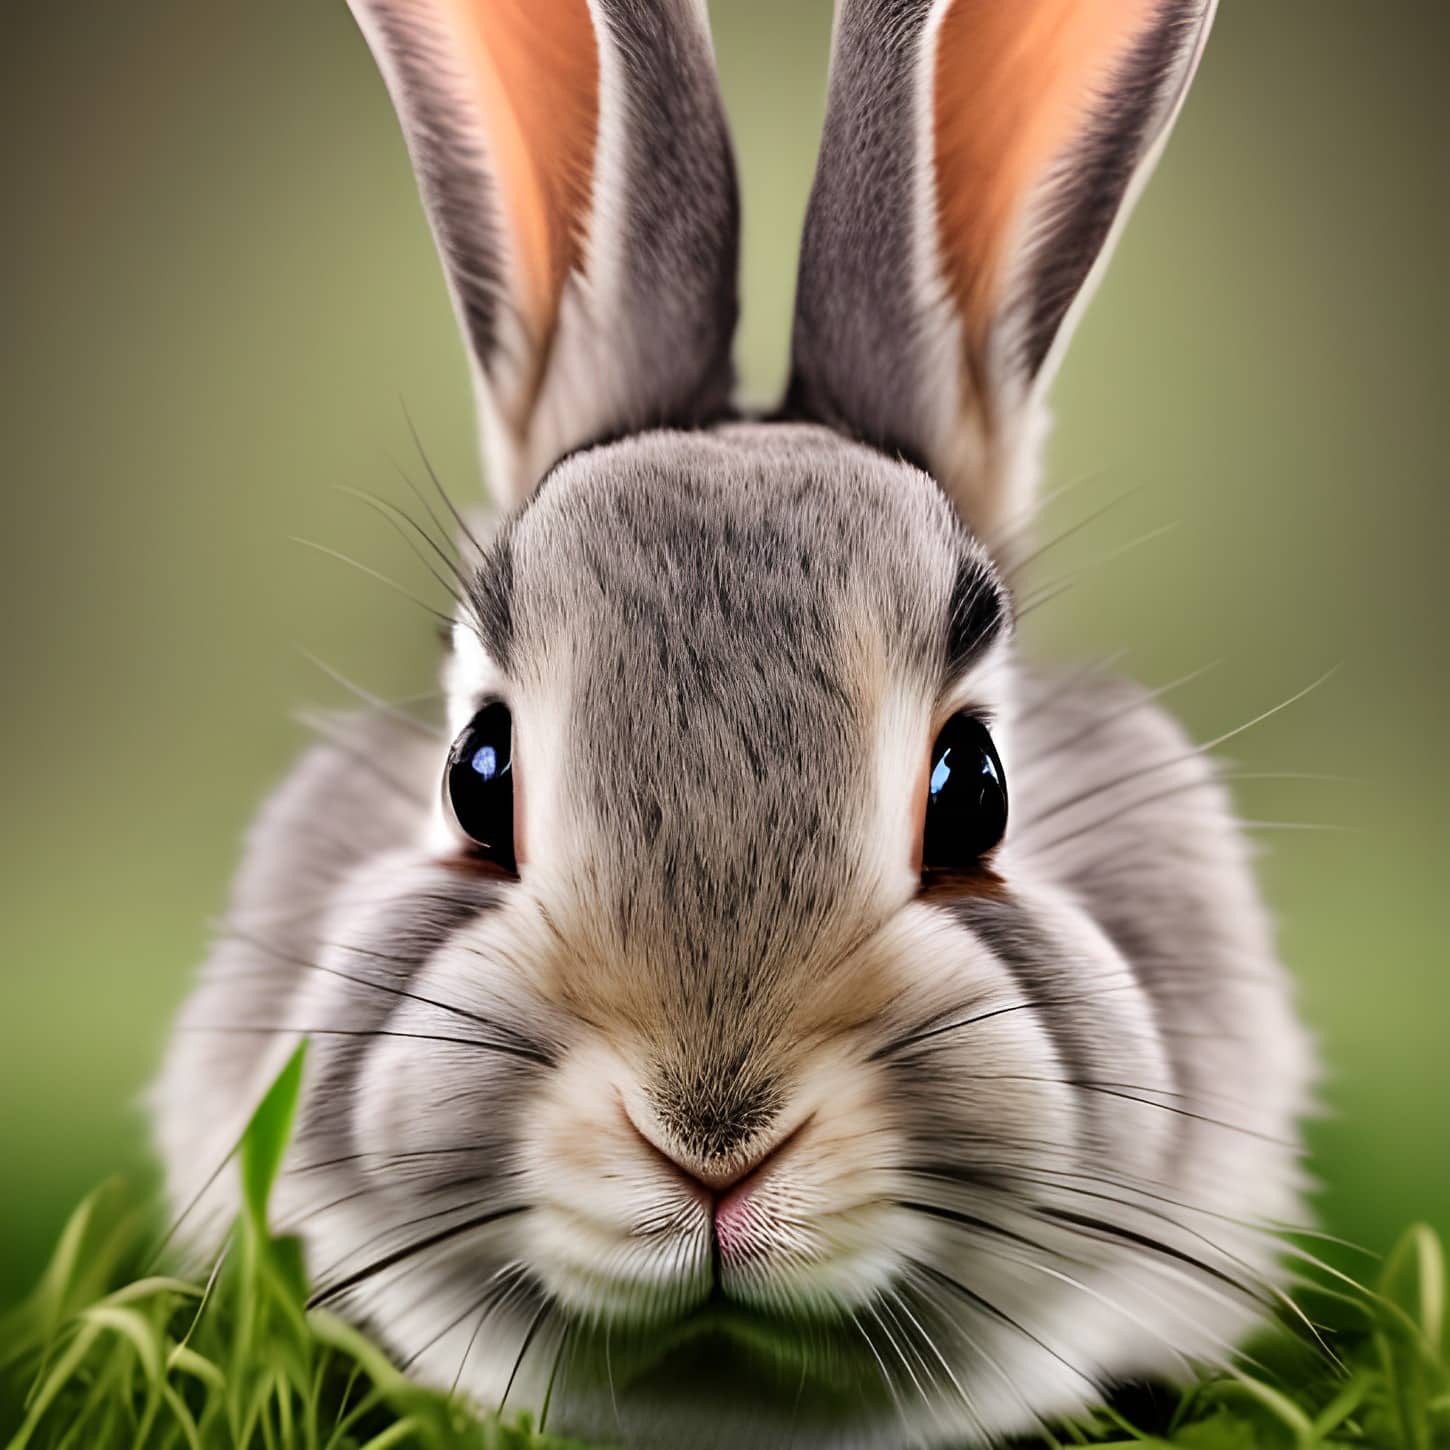 近距离, 兔子, 灰色, 头, 耳朵, 眼睛, 动物, 兔子